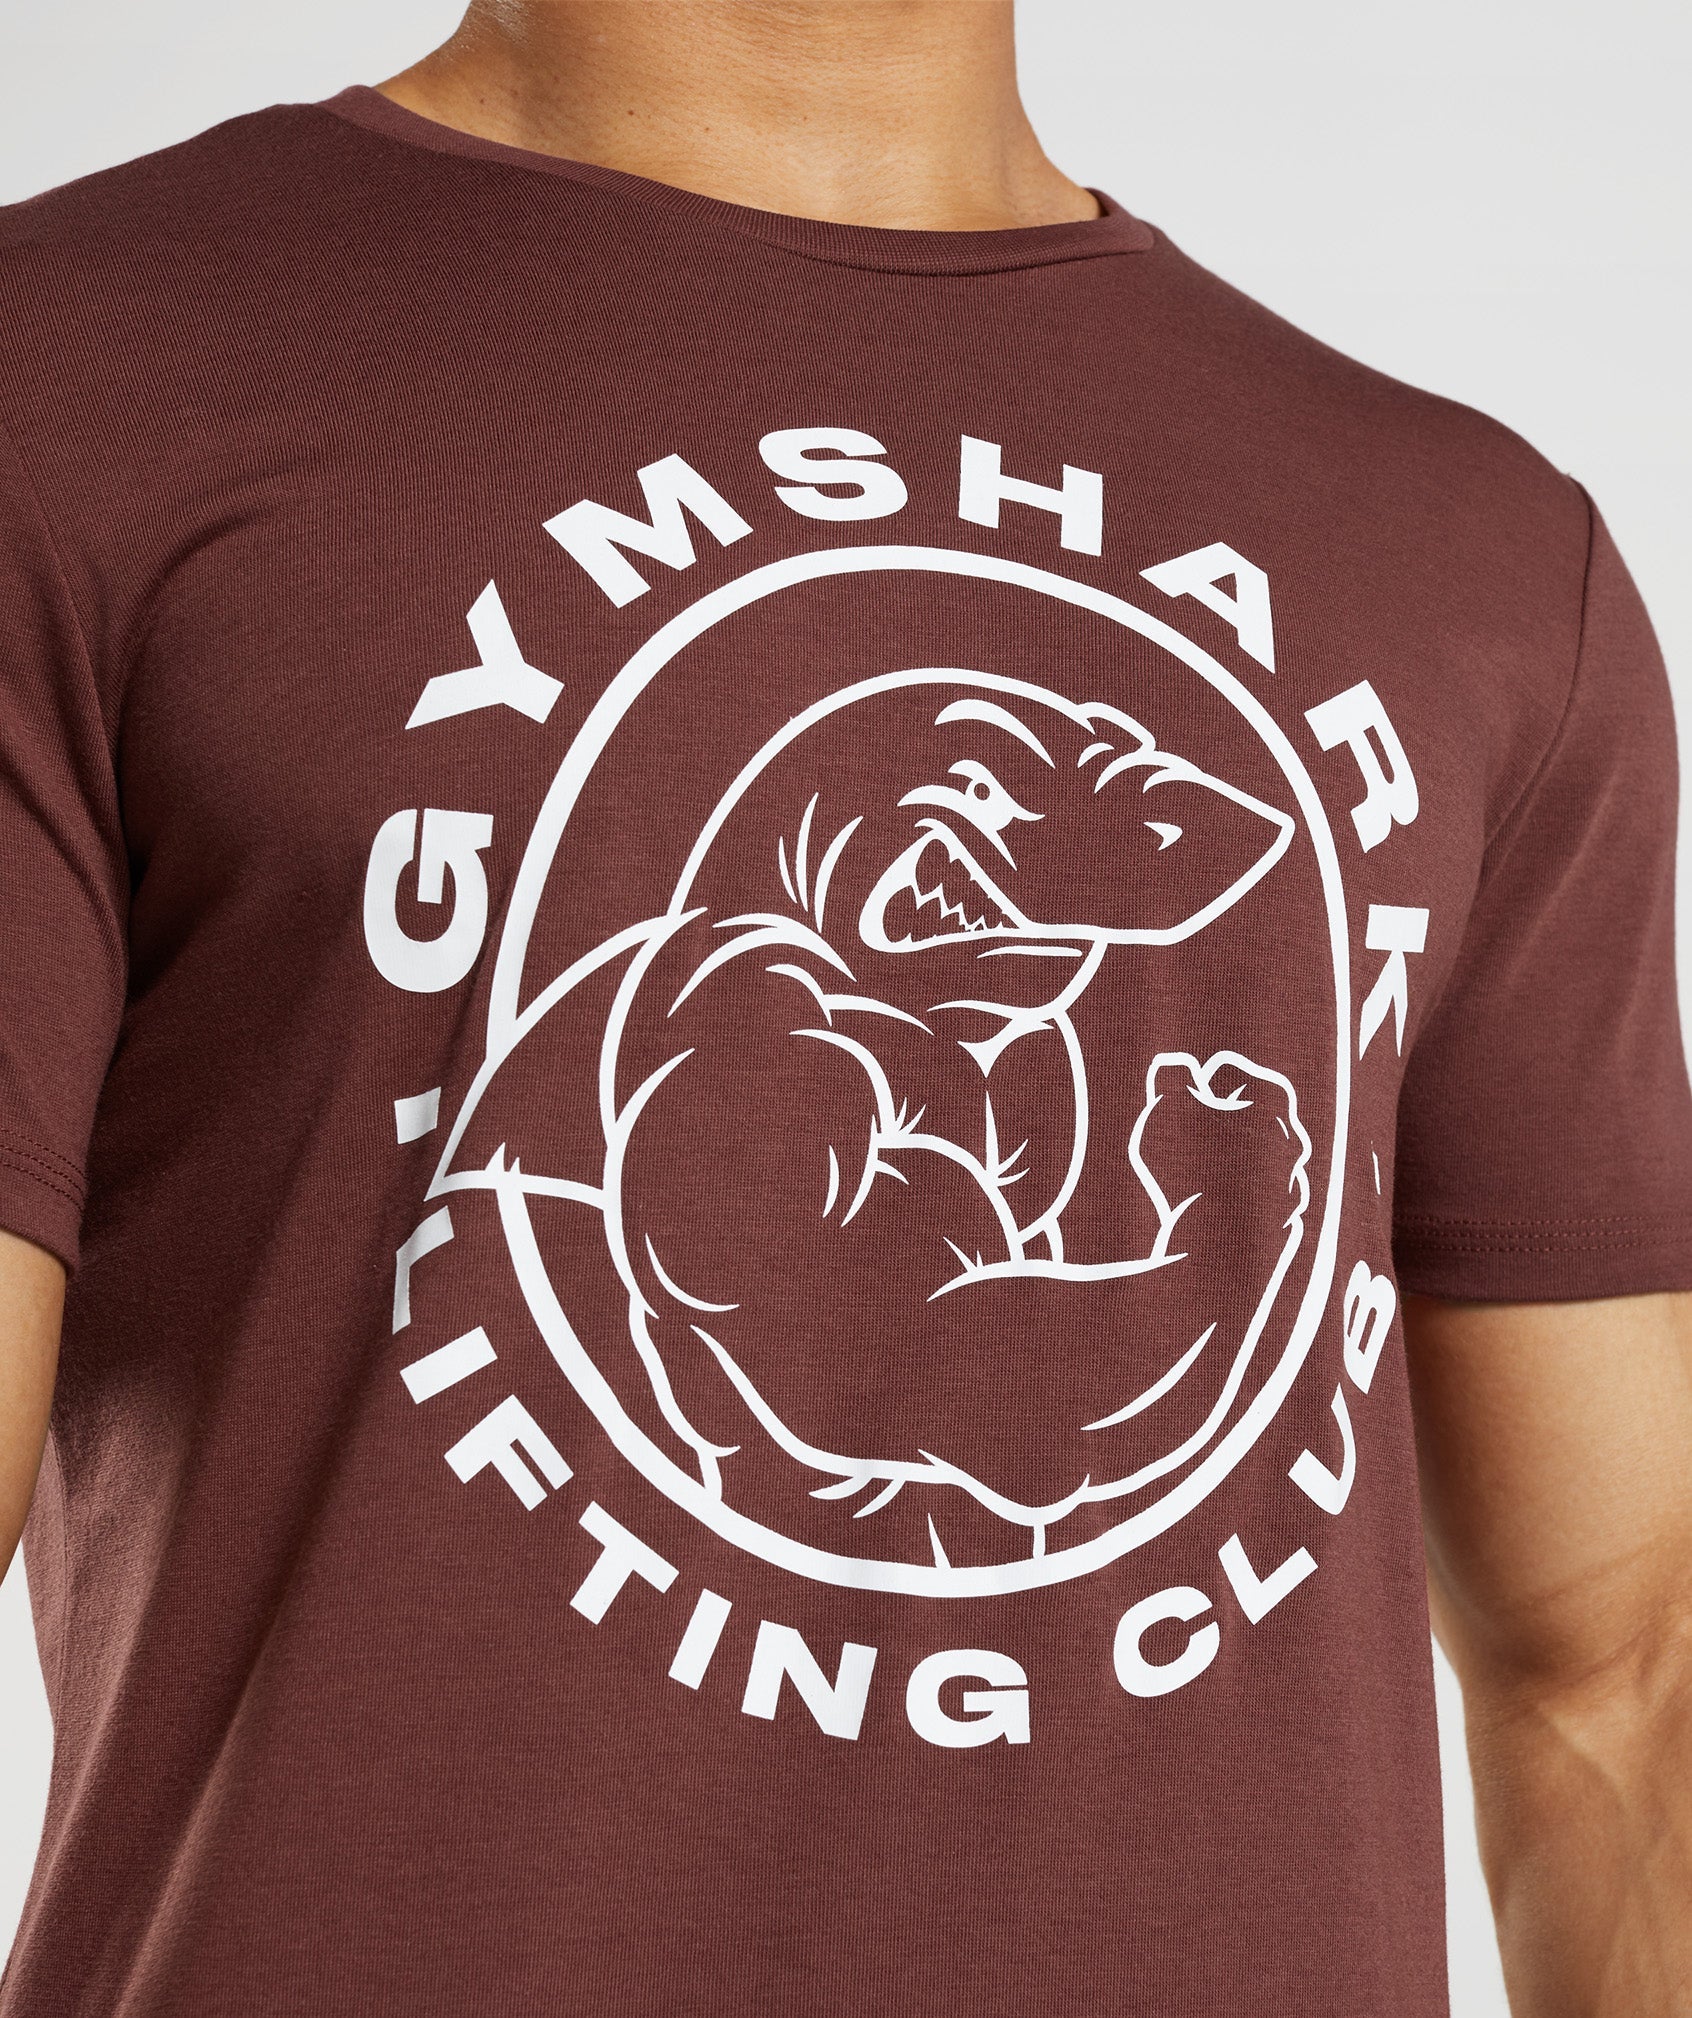 Shop Gymshark T Shirt online